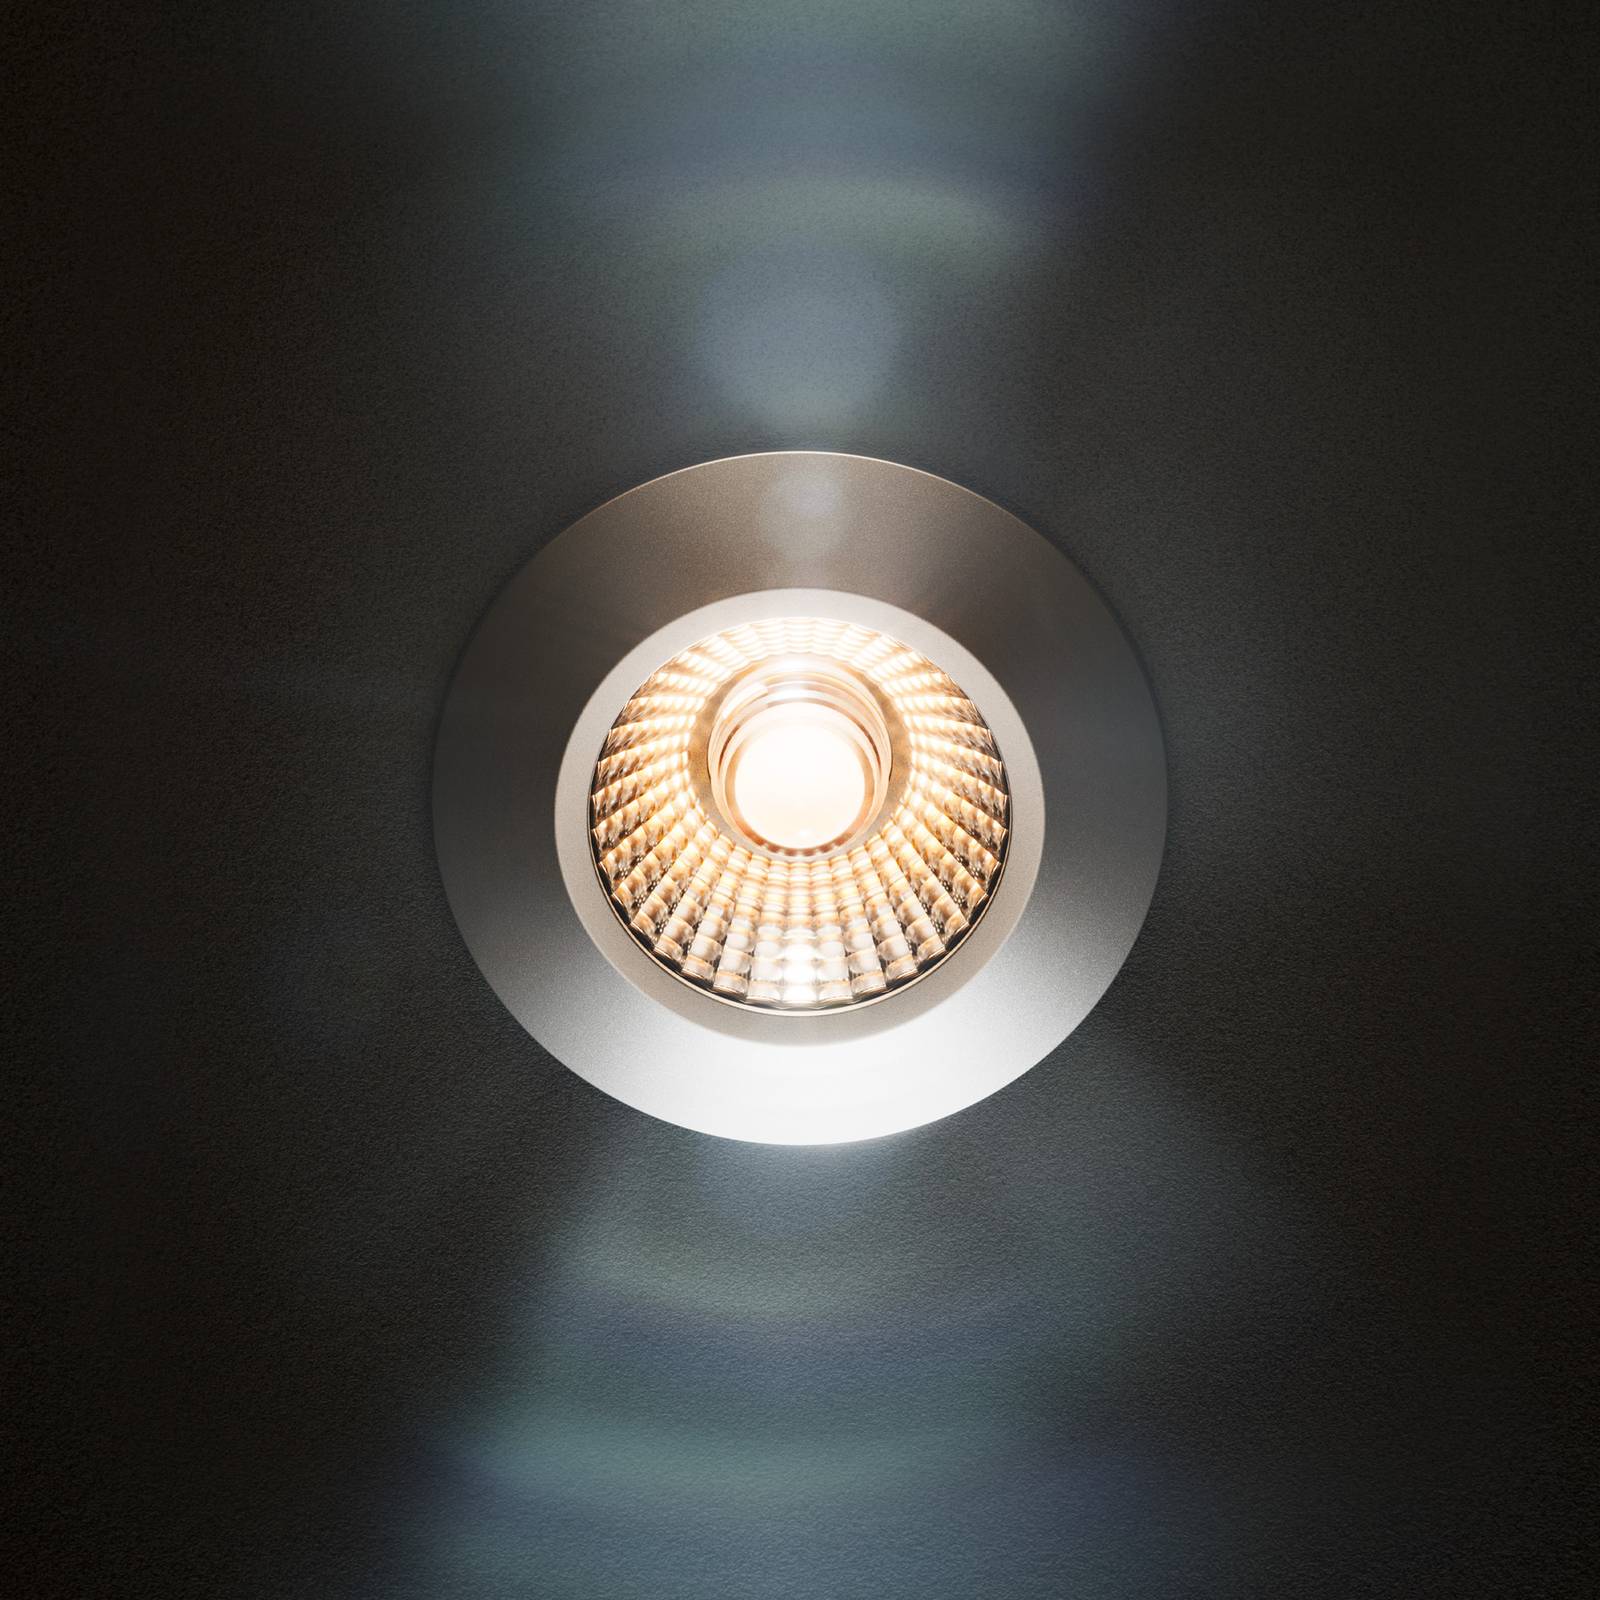 Sigor LED plafondinbouwspot Diled, Ø 6,7 cm, Dim-To-Warm, wit